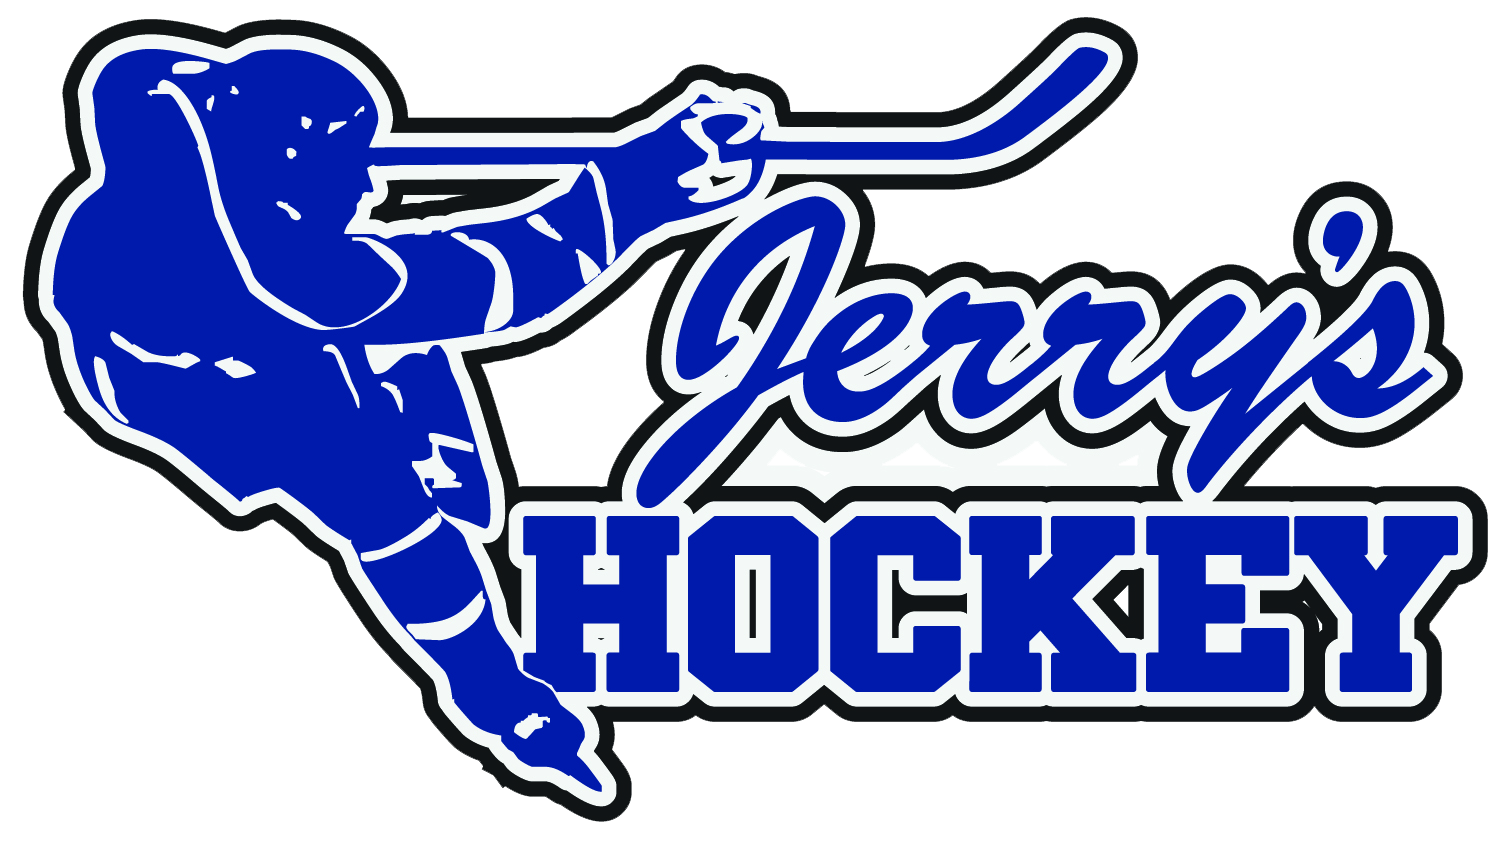 Jerry's Hockey